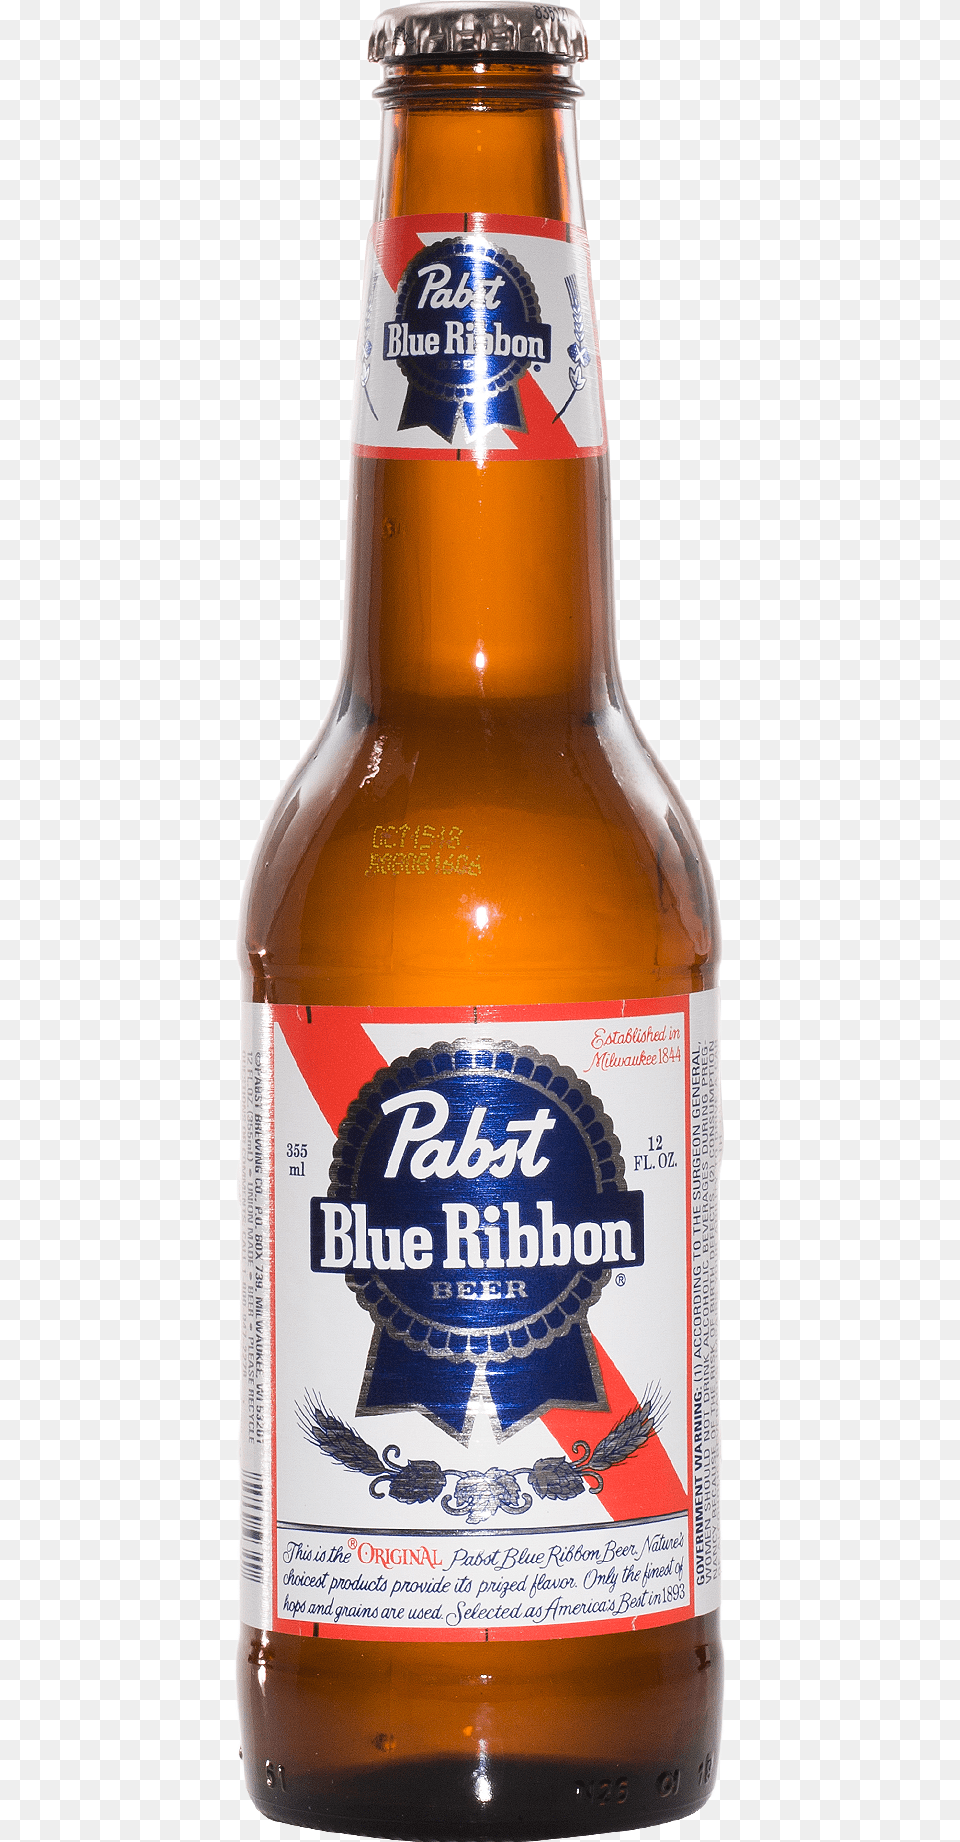 Blue Ribbon Beer Bottles, Alcohol, Beer Bottle, Beverage, Bottle Png